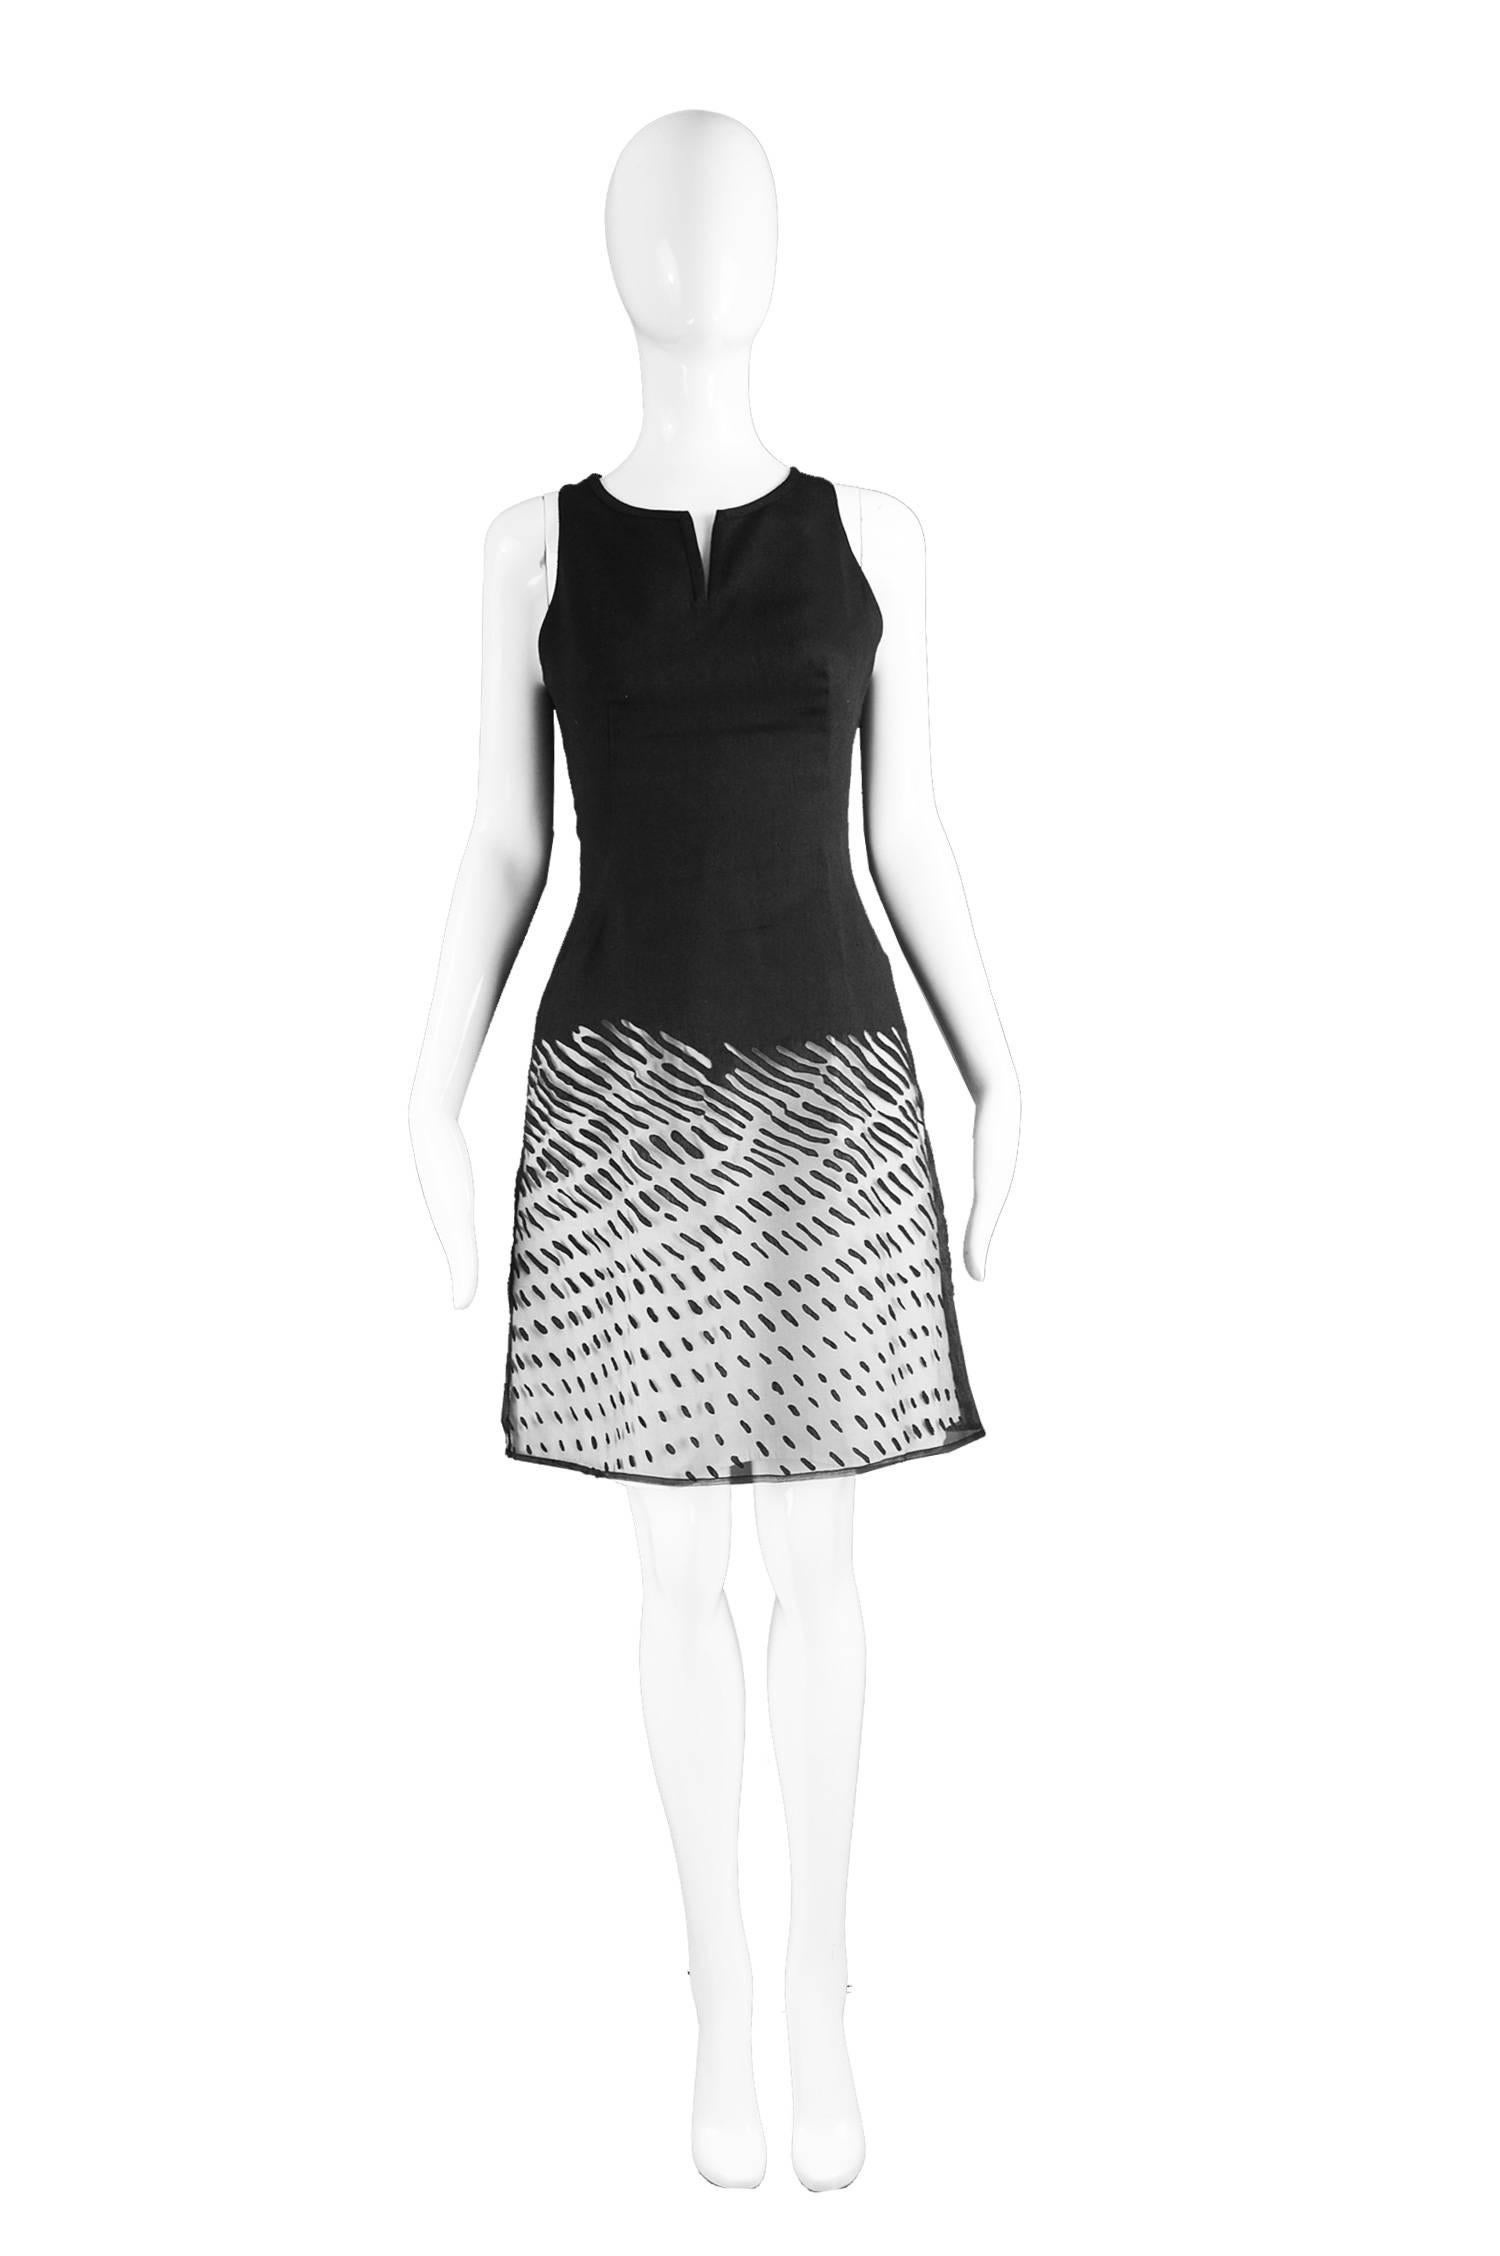 Kenzo Vintage Black Linen & Flocked Organza Sleeveless Dress, 1990s

Estimated Size: UK 8/ US 4/ EU 36. Please check measurements. 
Bust - 32” / 81cm
Waist - 26” / 66cm
Hips - 34” / 86cm
Length (Shoulder to Hem) - 36” / 91cm

Condition: Excellent